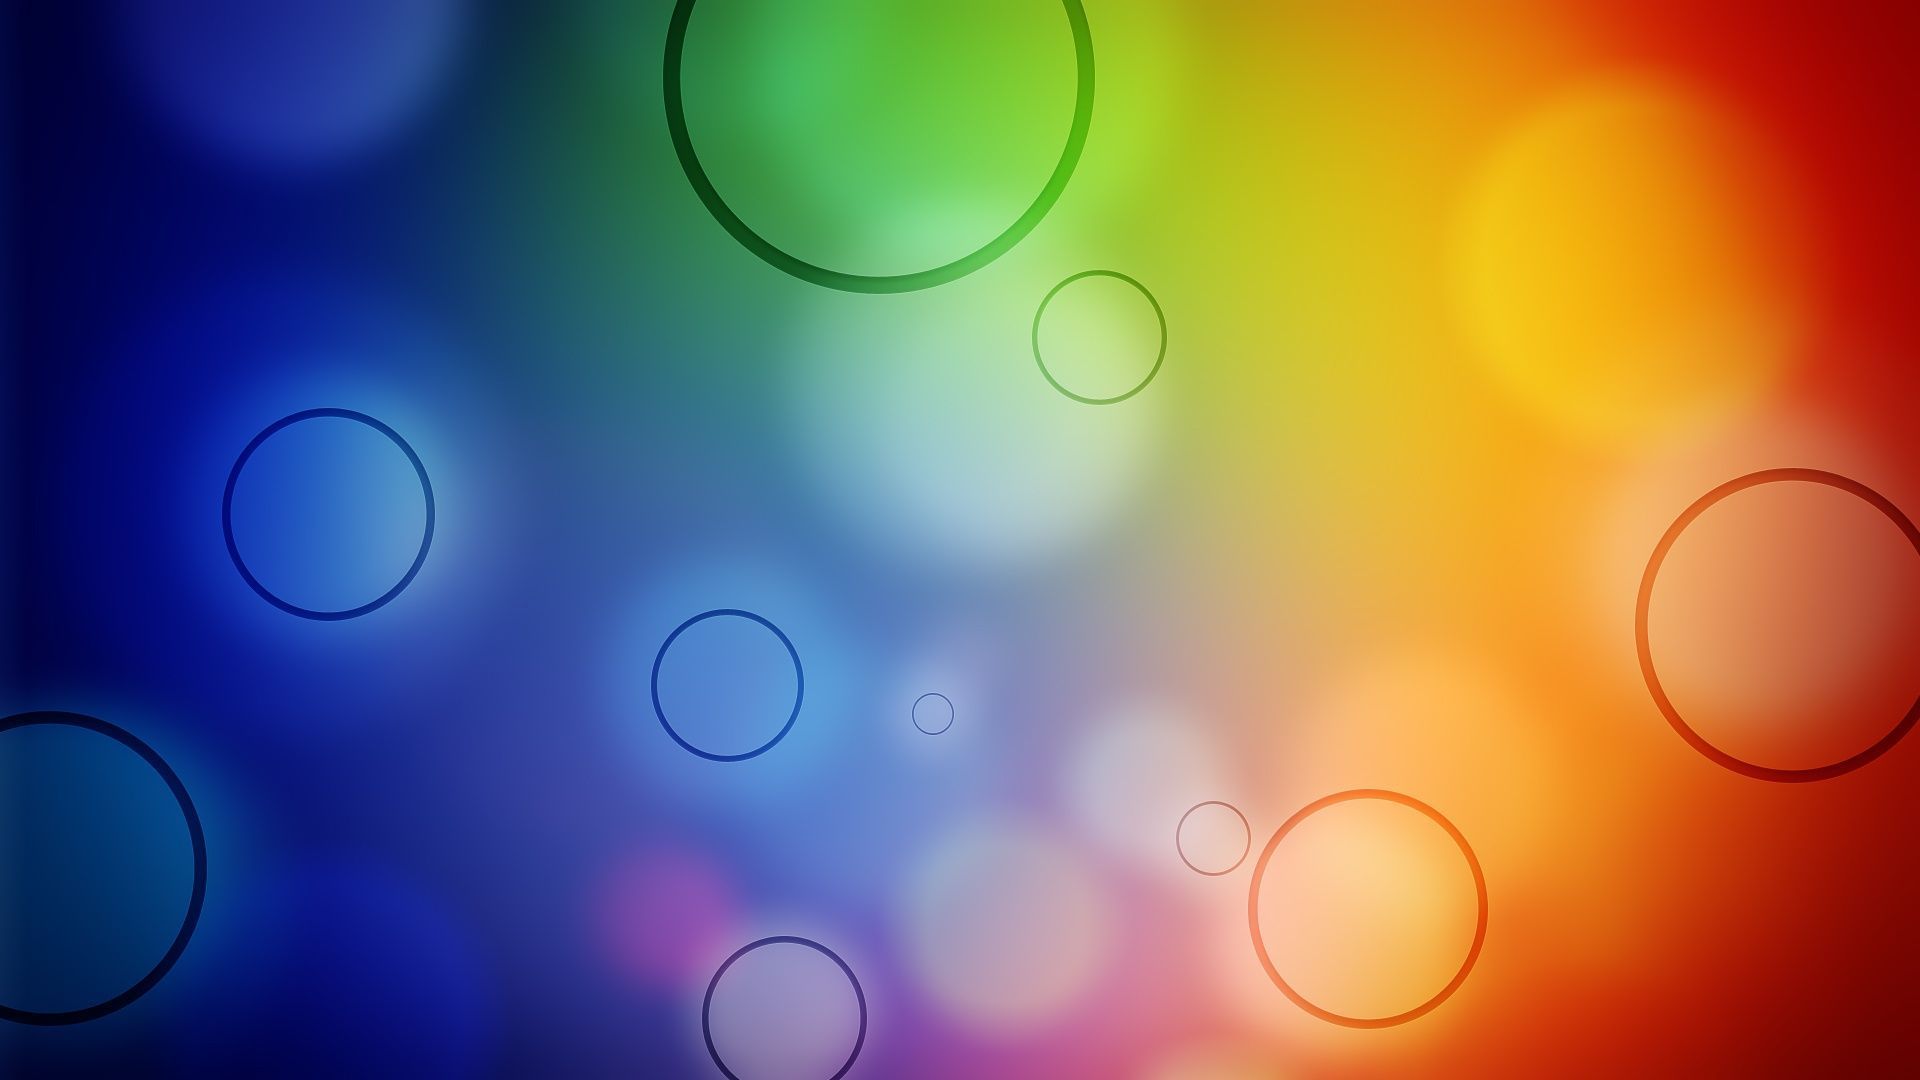 Top Wallpaper Color Bubbles Design Images for Pinterest